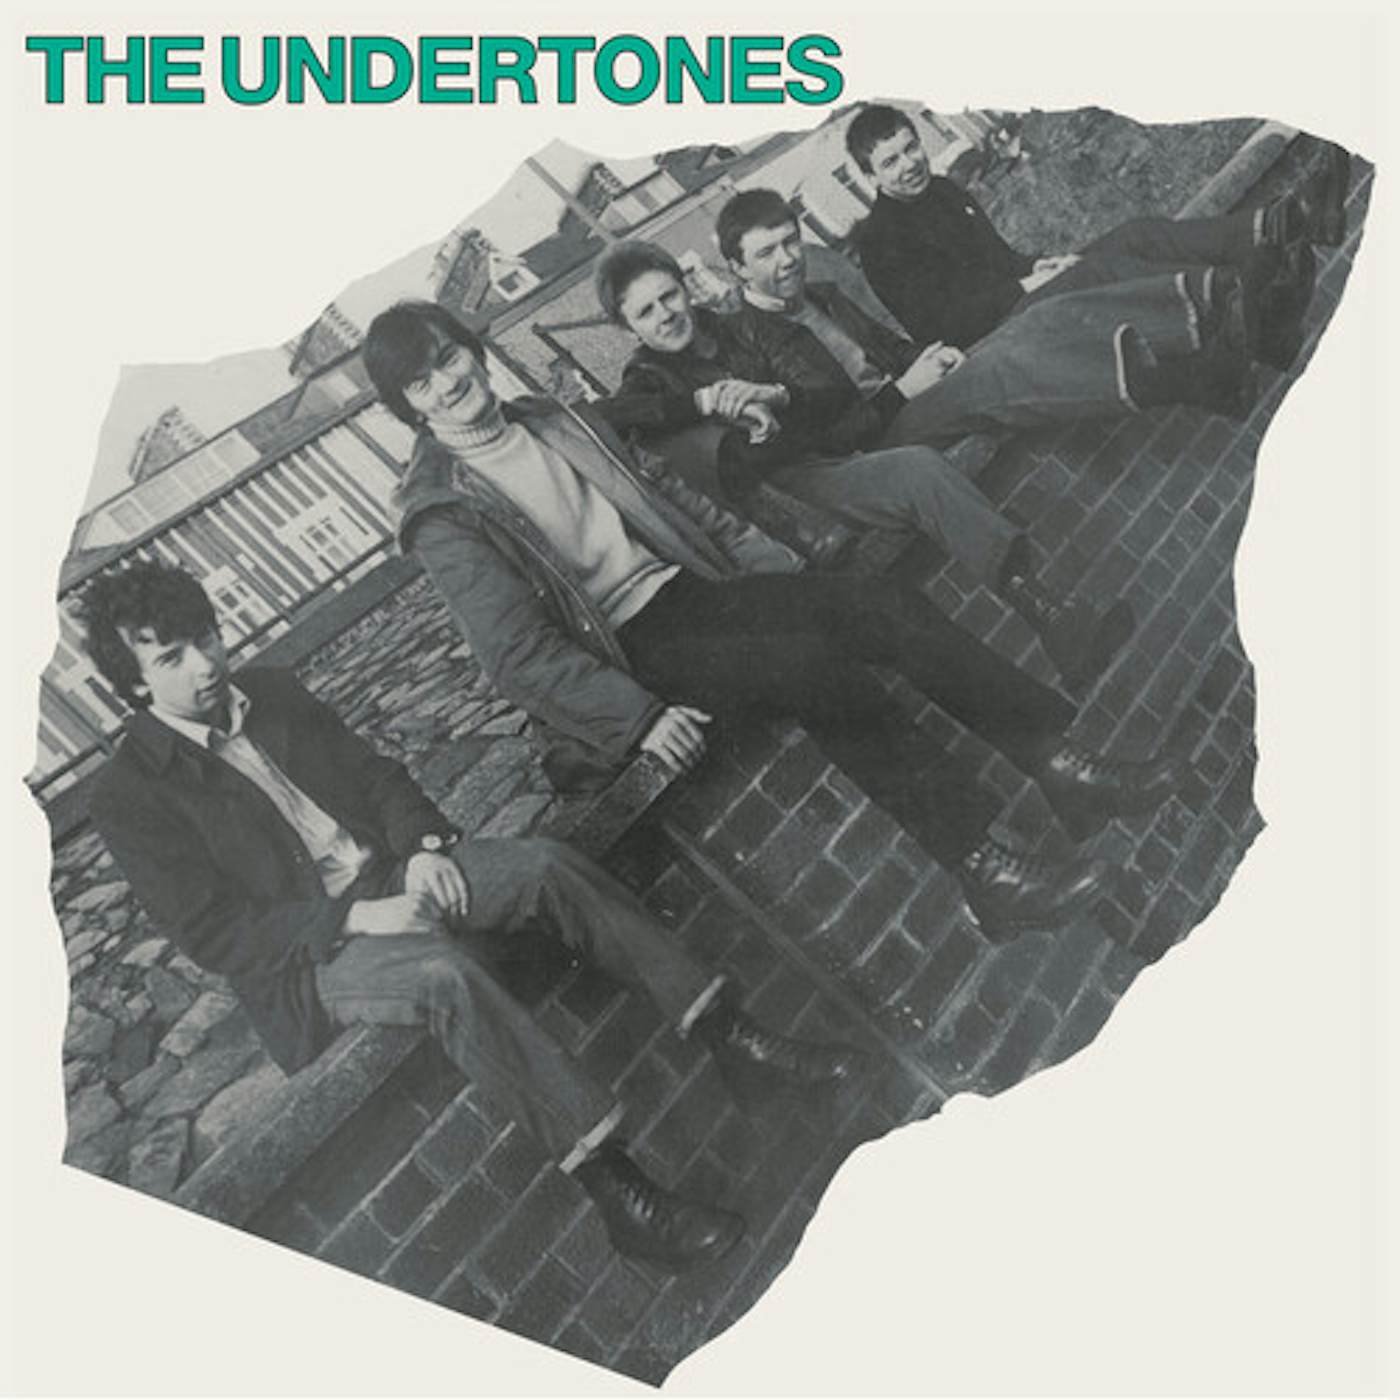 The Undertones Vinyl Record